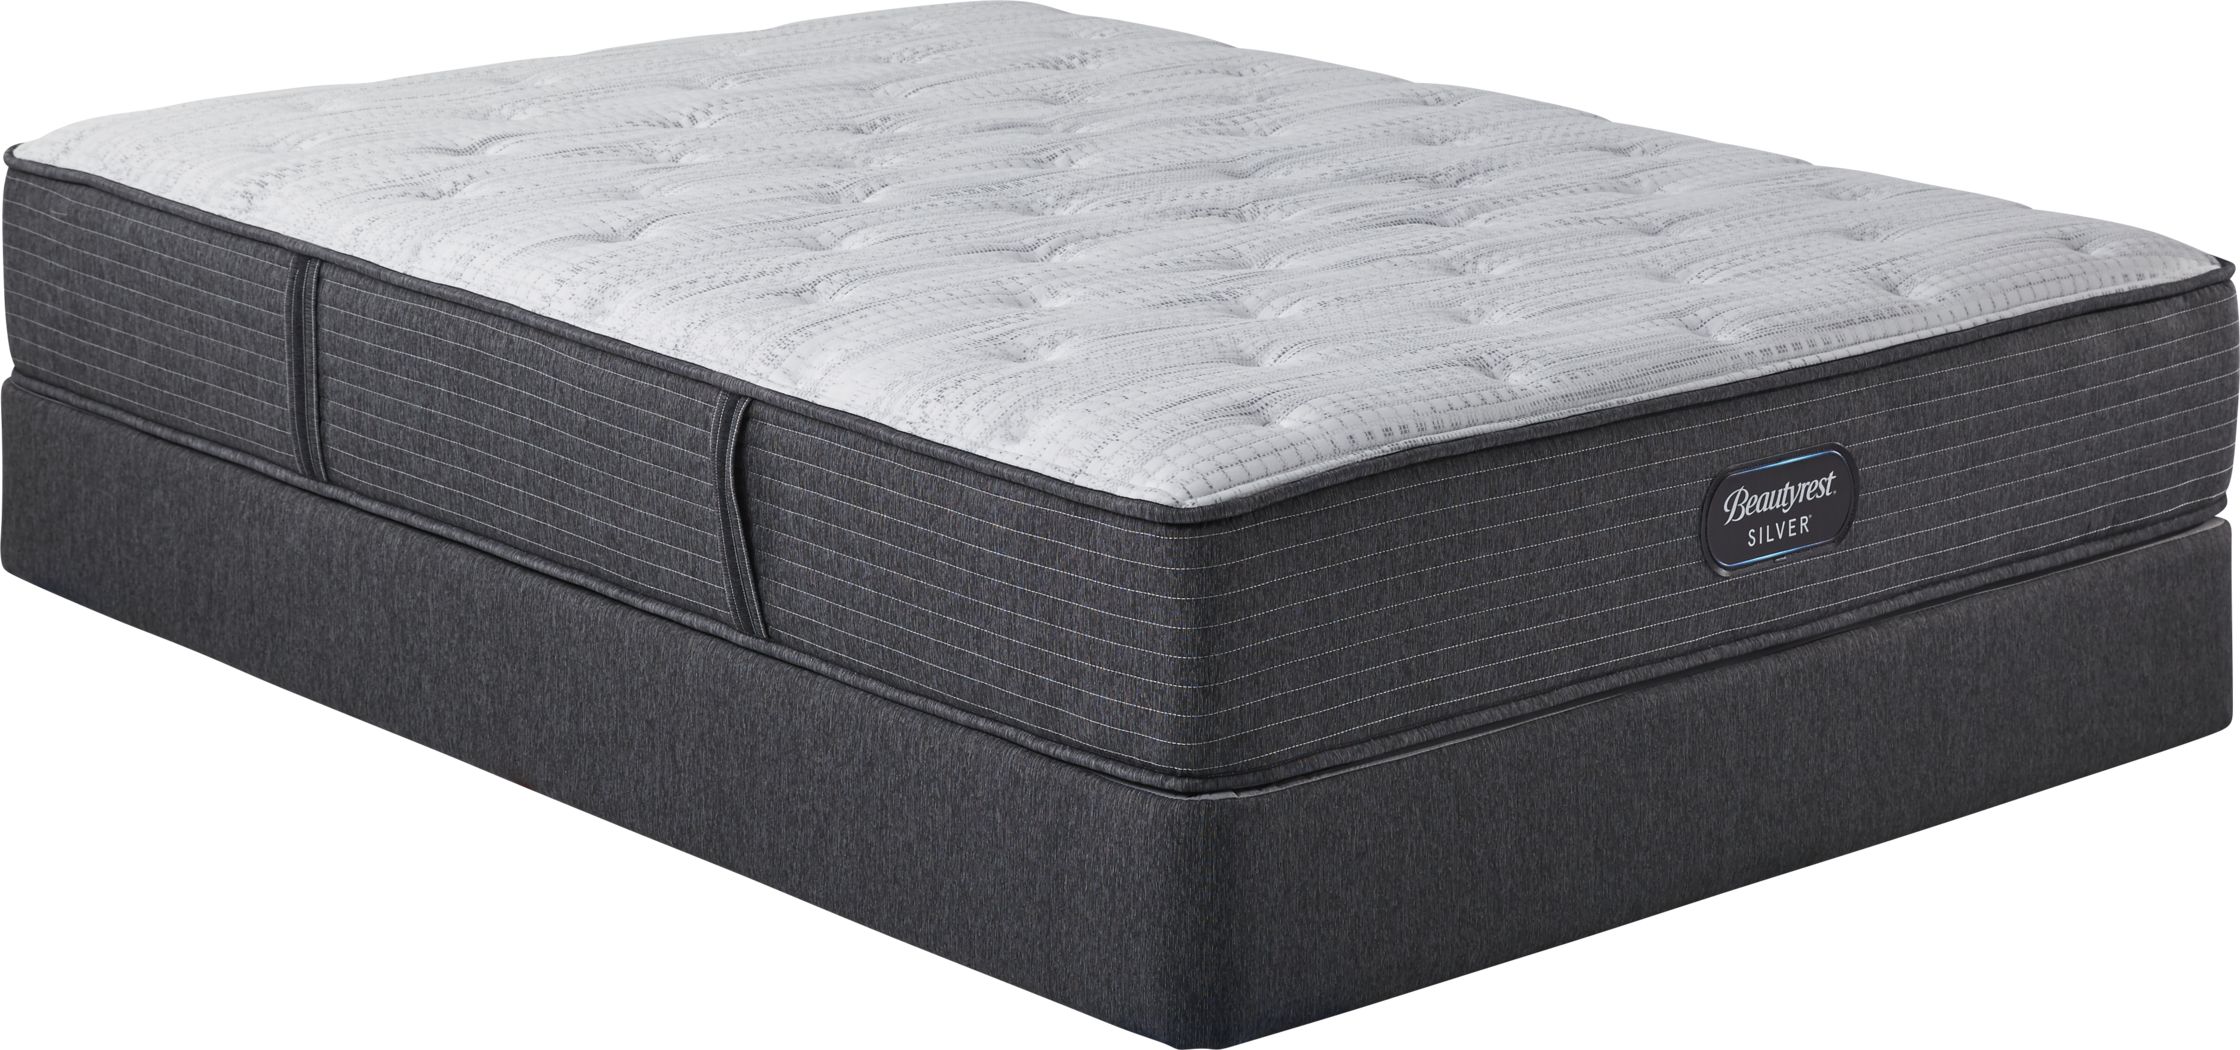 beautyrest full size air mattress walmart